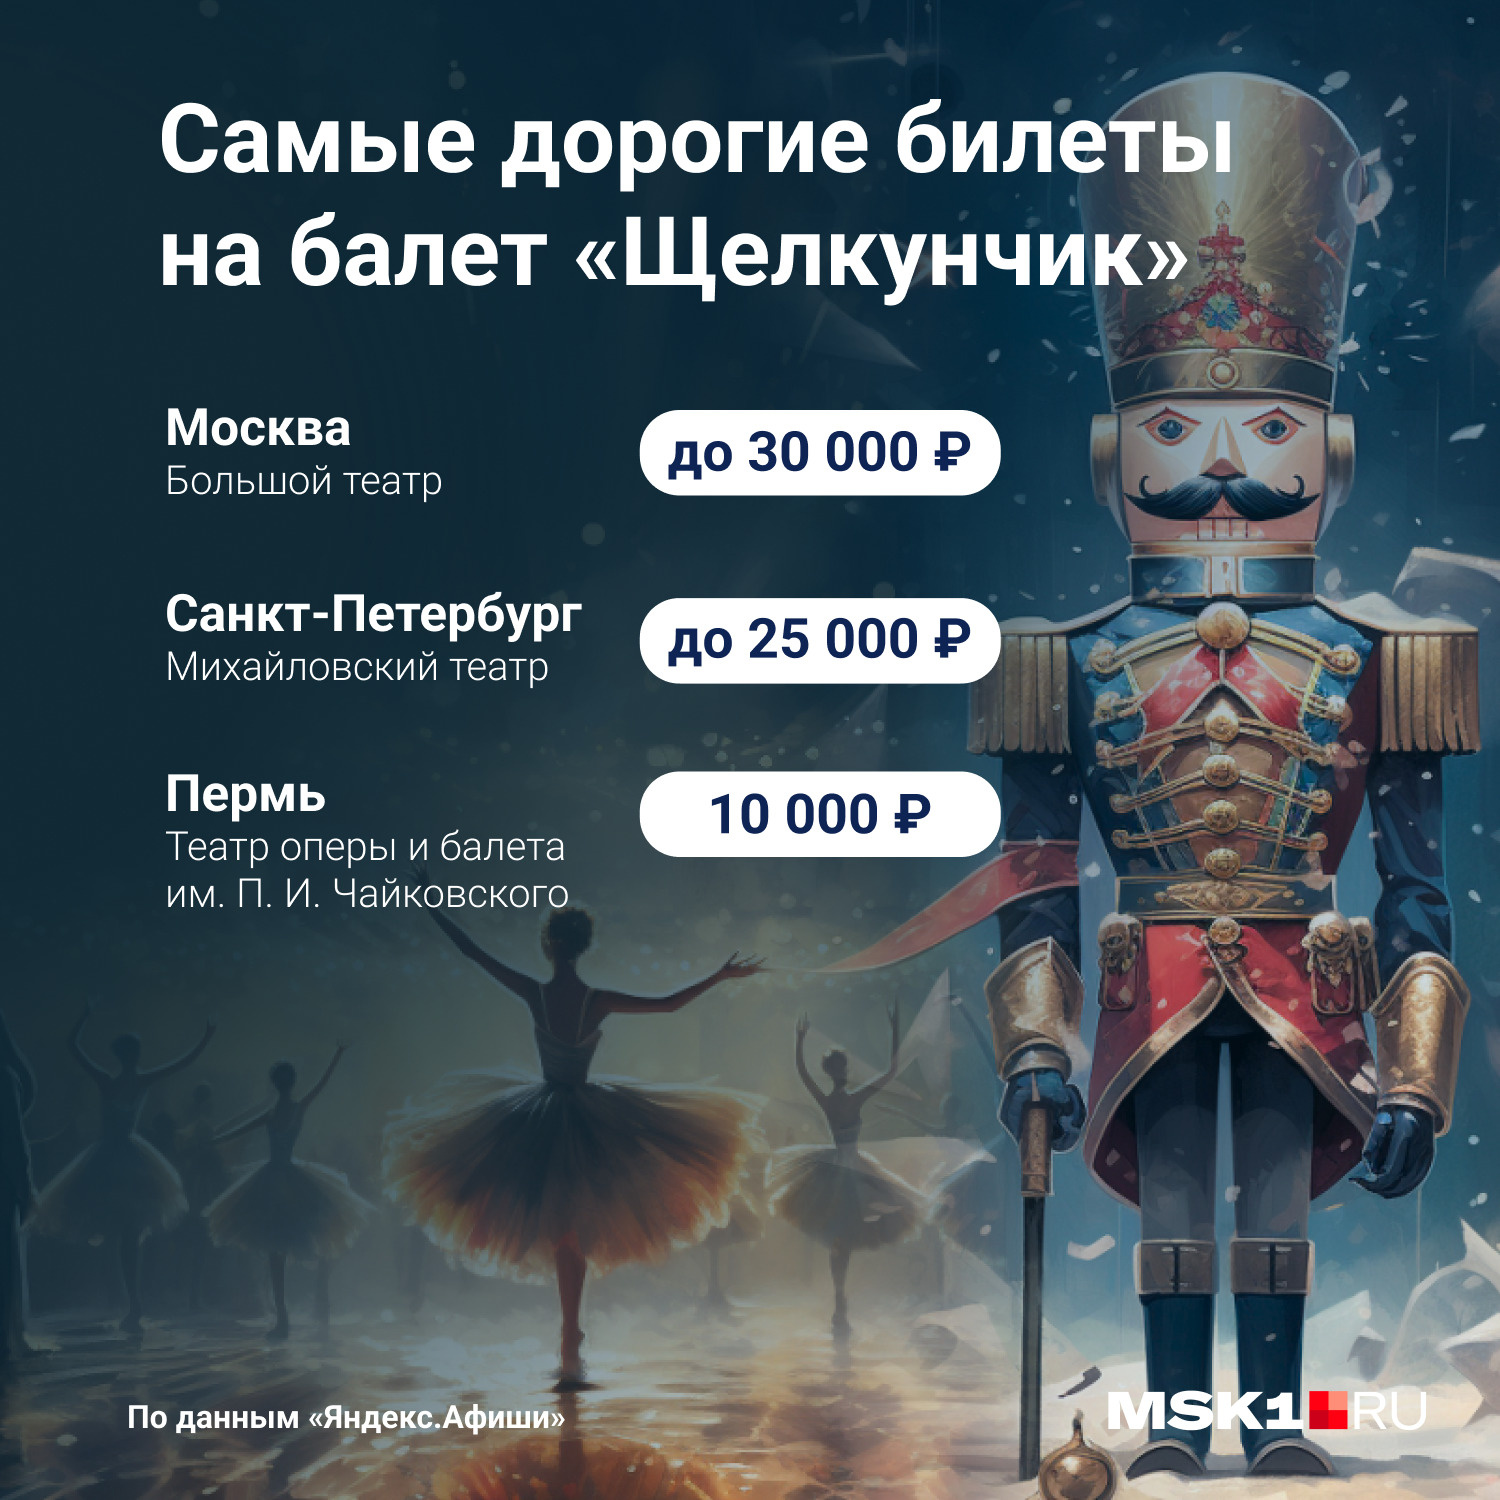 Санкт-Петербургский Большой театр Кукол приглашает...